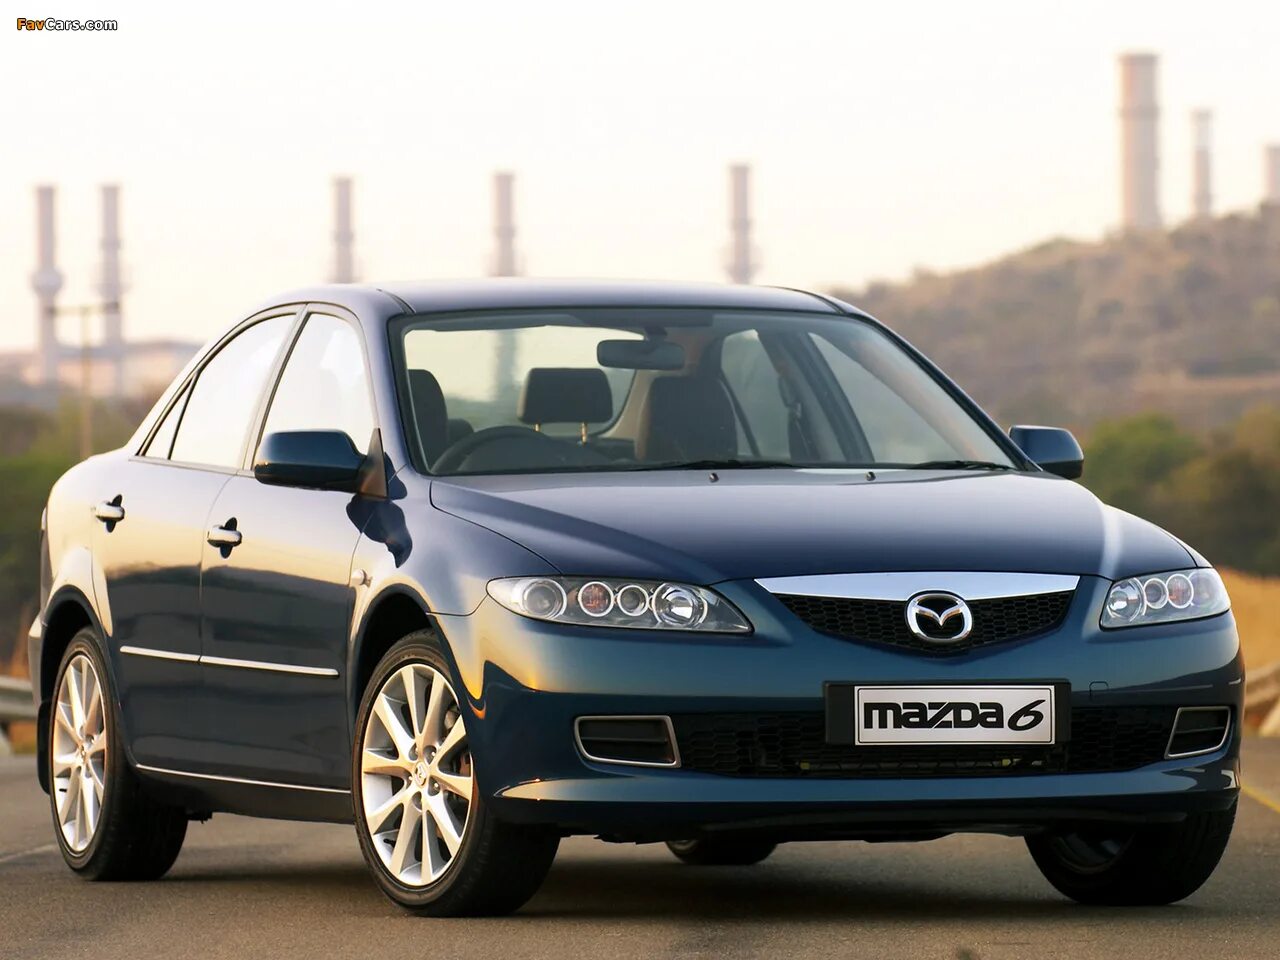 2002 г по 2005 г. Mazda 6 gg. Mazda 6 gg 2005. Mazda 6 gg 2002. Мазда 6 седан 2005.